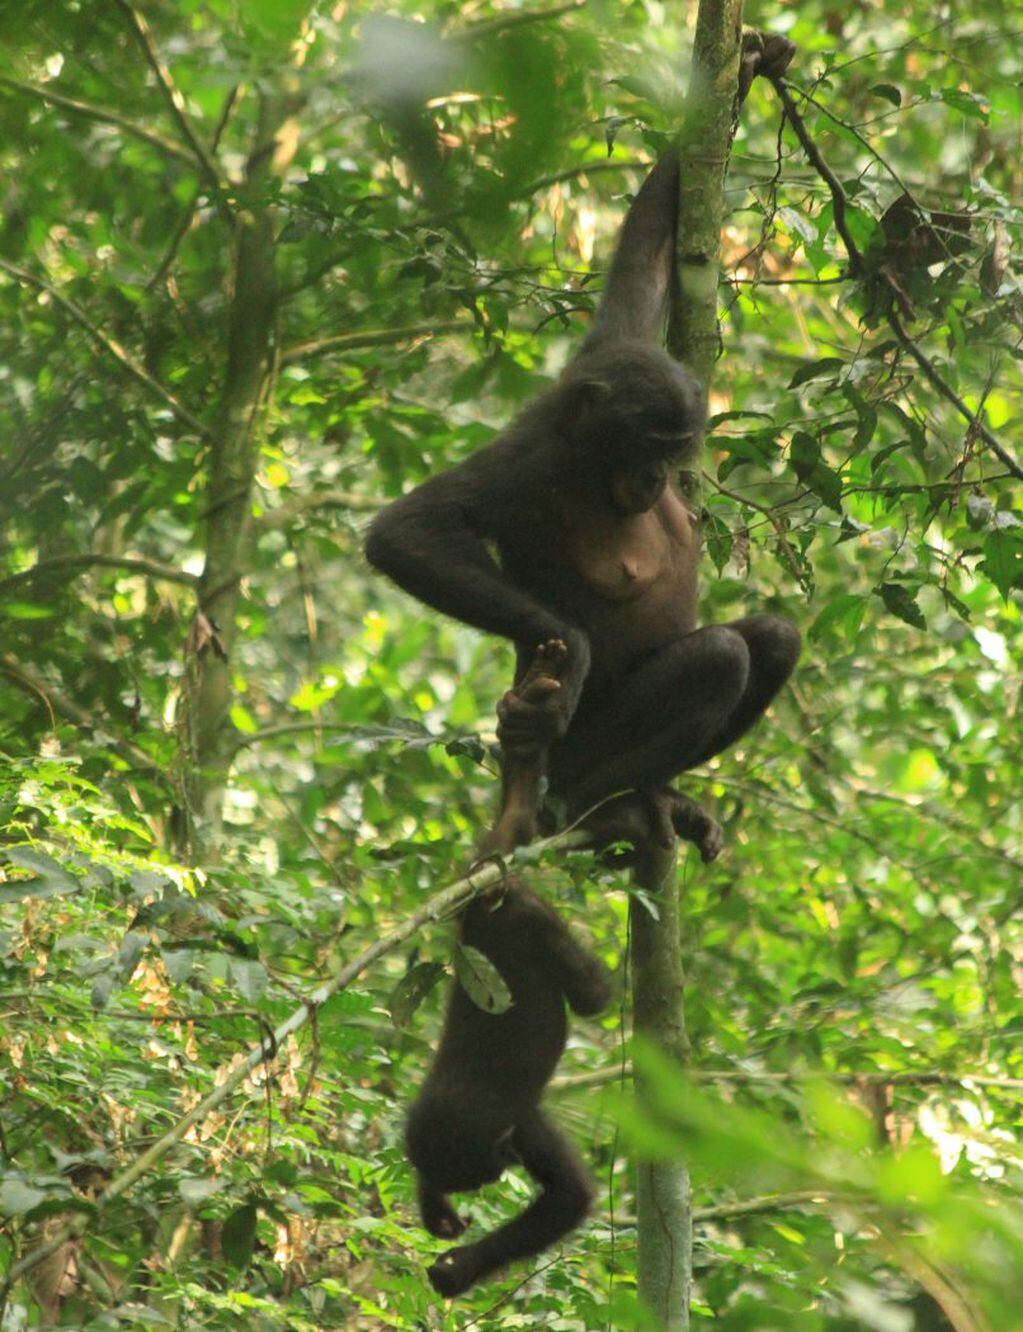 Madre bonobo sostiene a su cría colgando en un árbol.